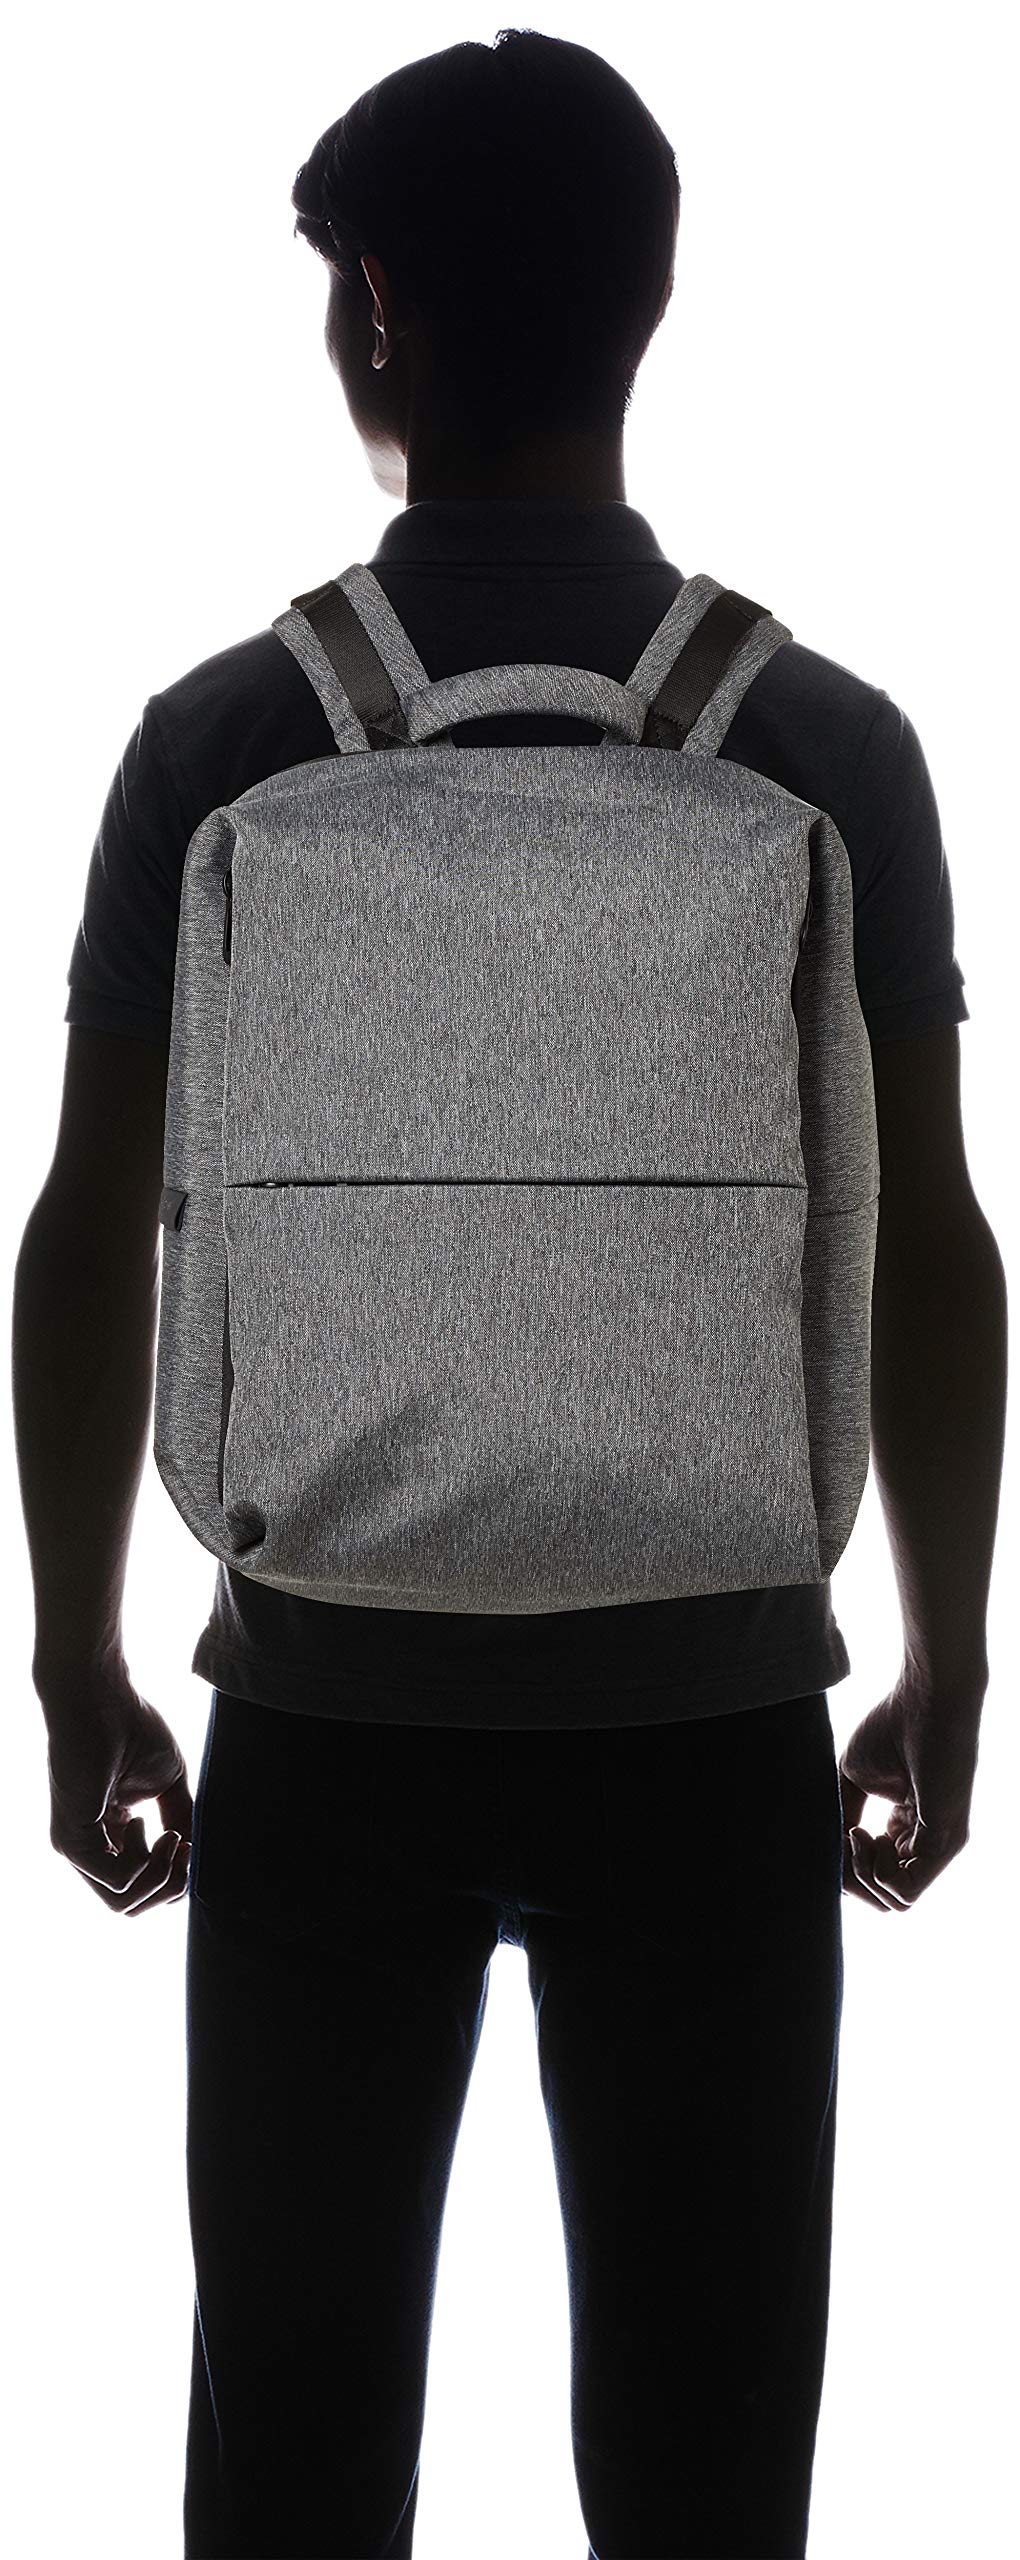 Cote&Ciel(コート&シエル) Men's CC-28039 Backpack, Black Melange, One Size